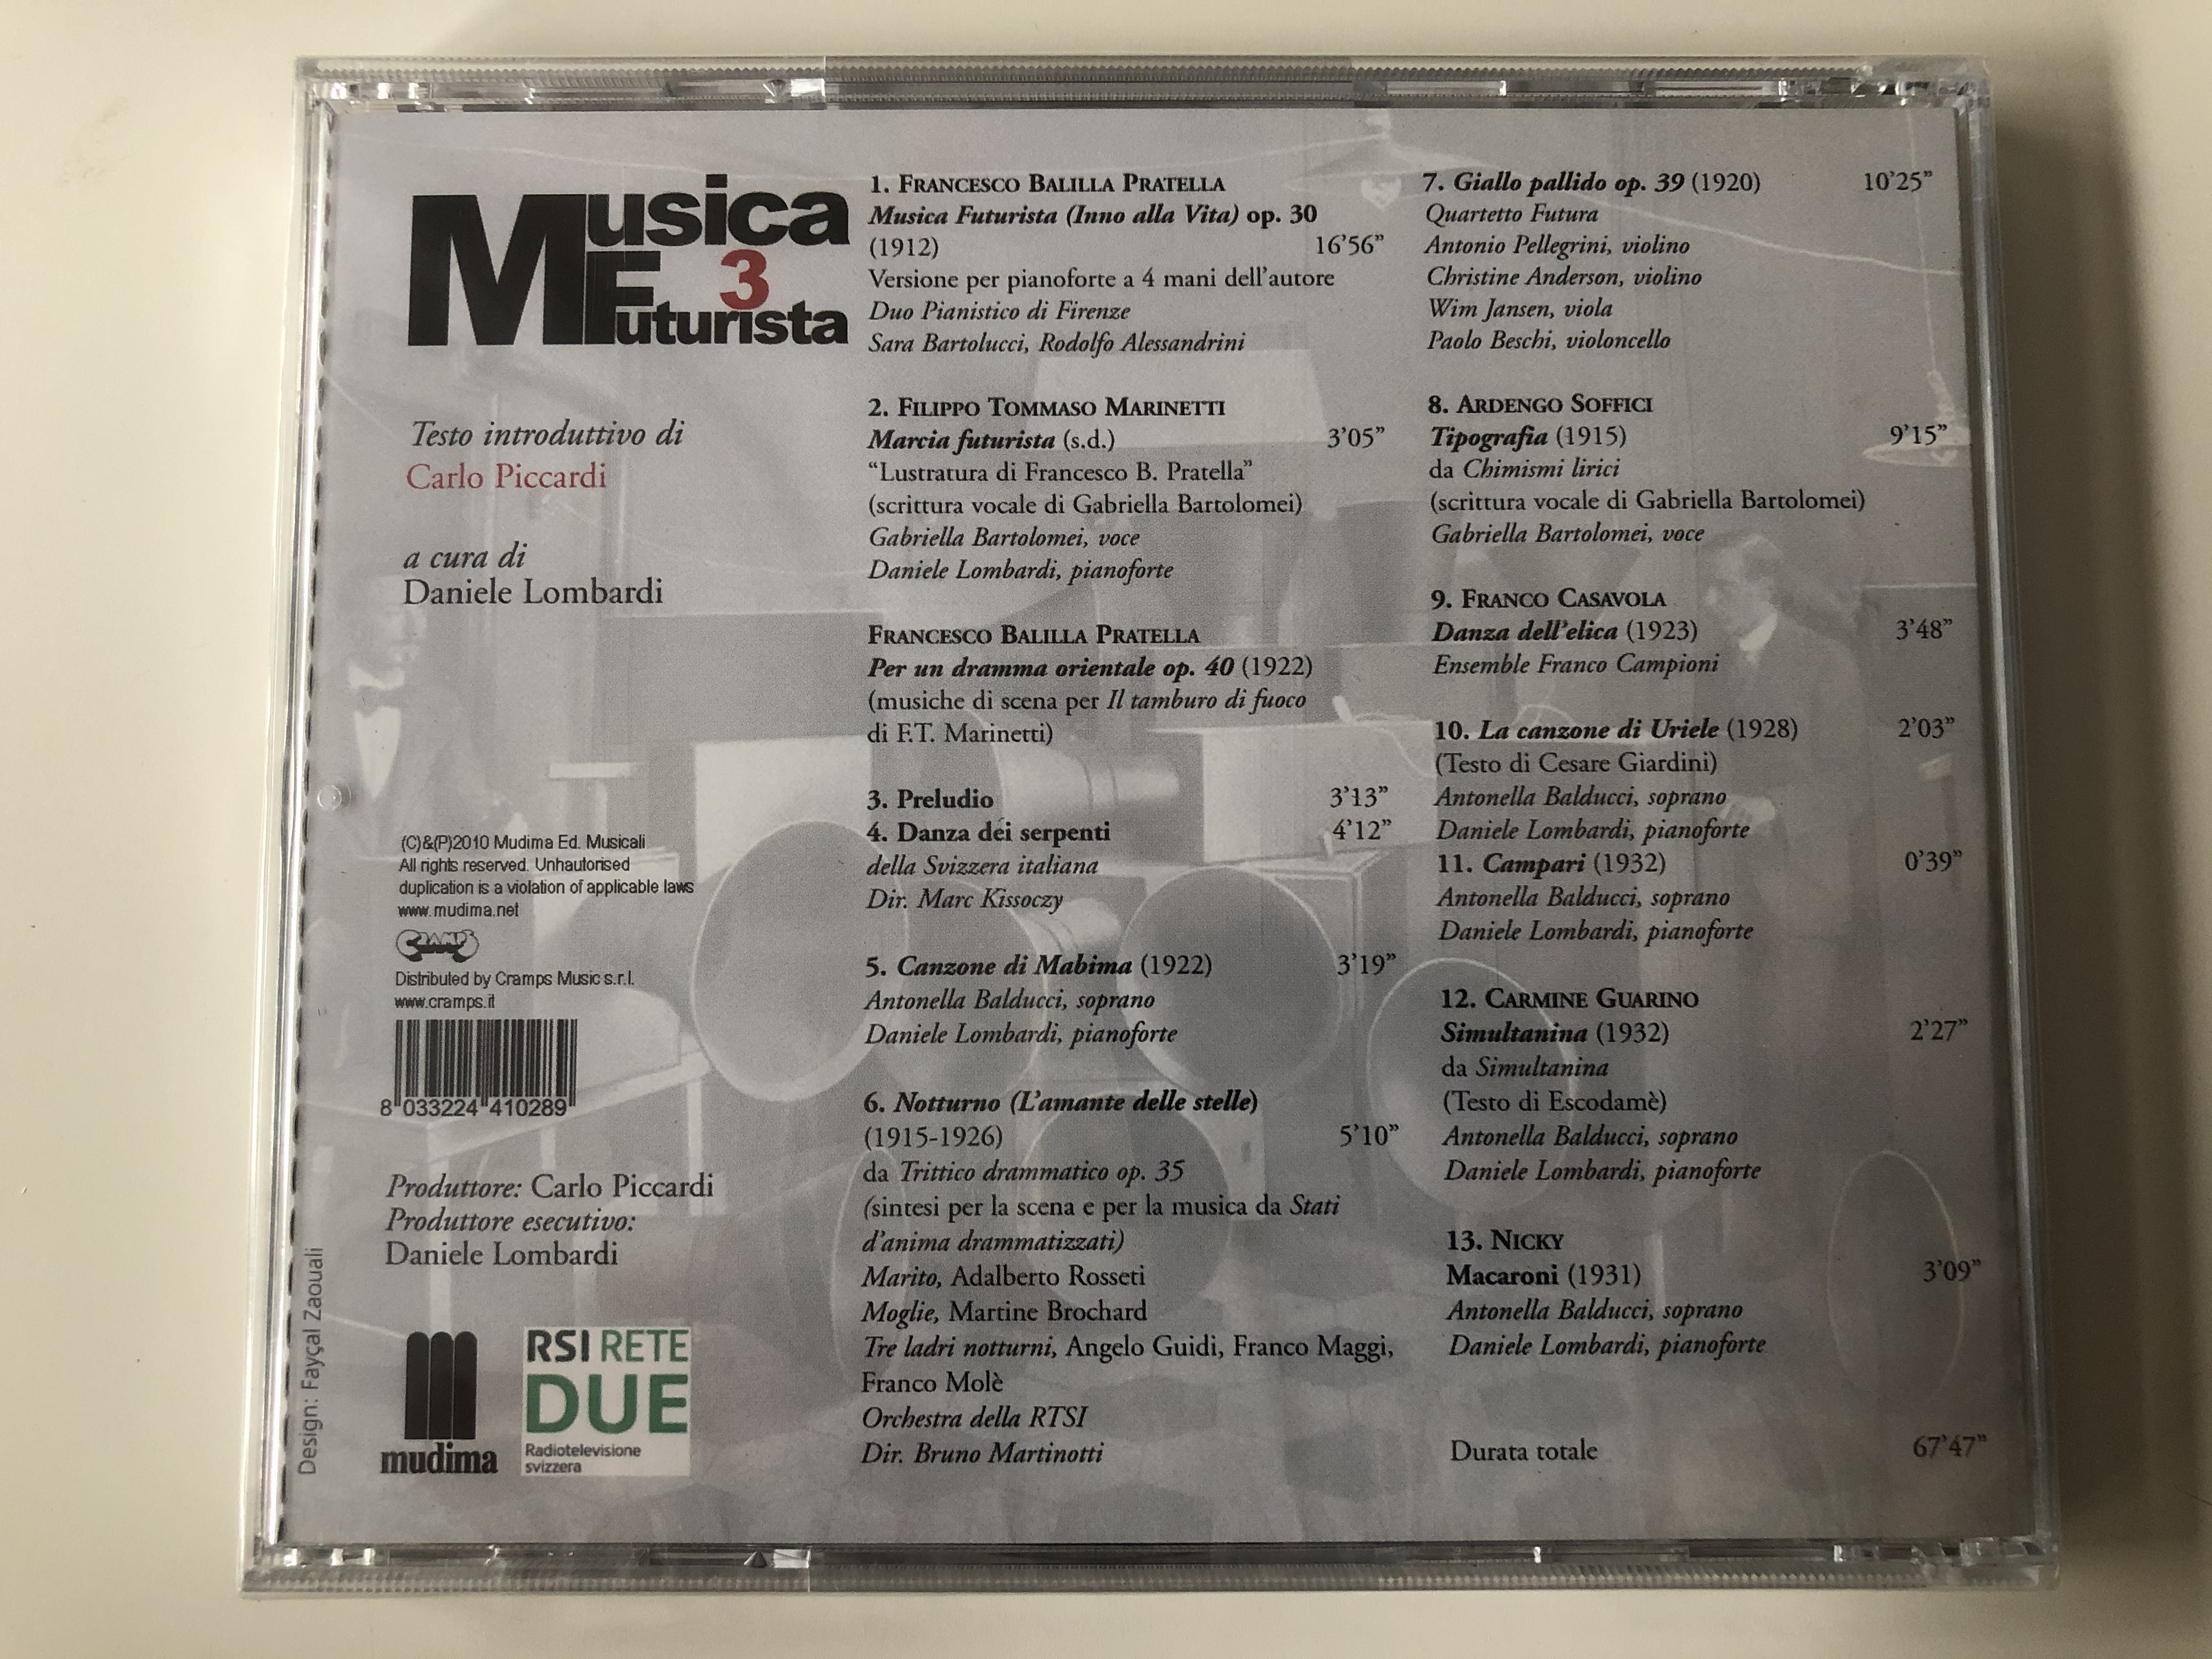 musica-futurista-3-testo-introduttivo-di-carlo-piccardi-a-cura-di-daniele-lombardi-mudima-ed.-musicali-audio-cd-2010-8033224410289-2-.jpg